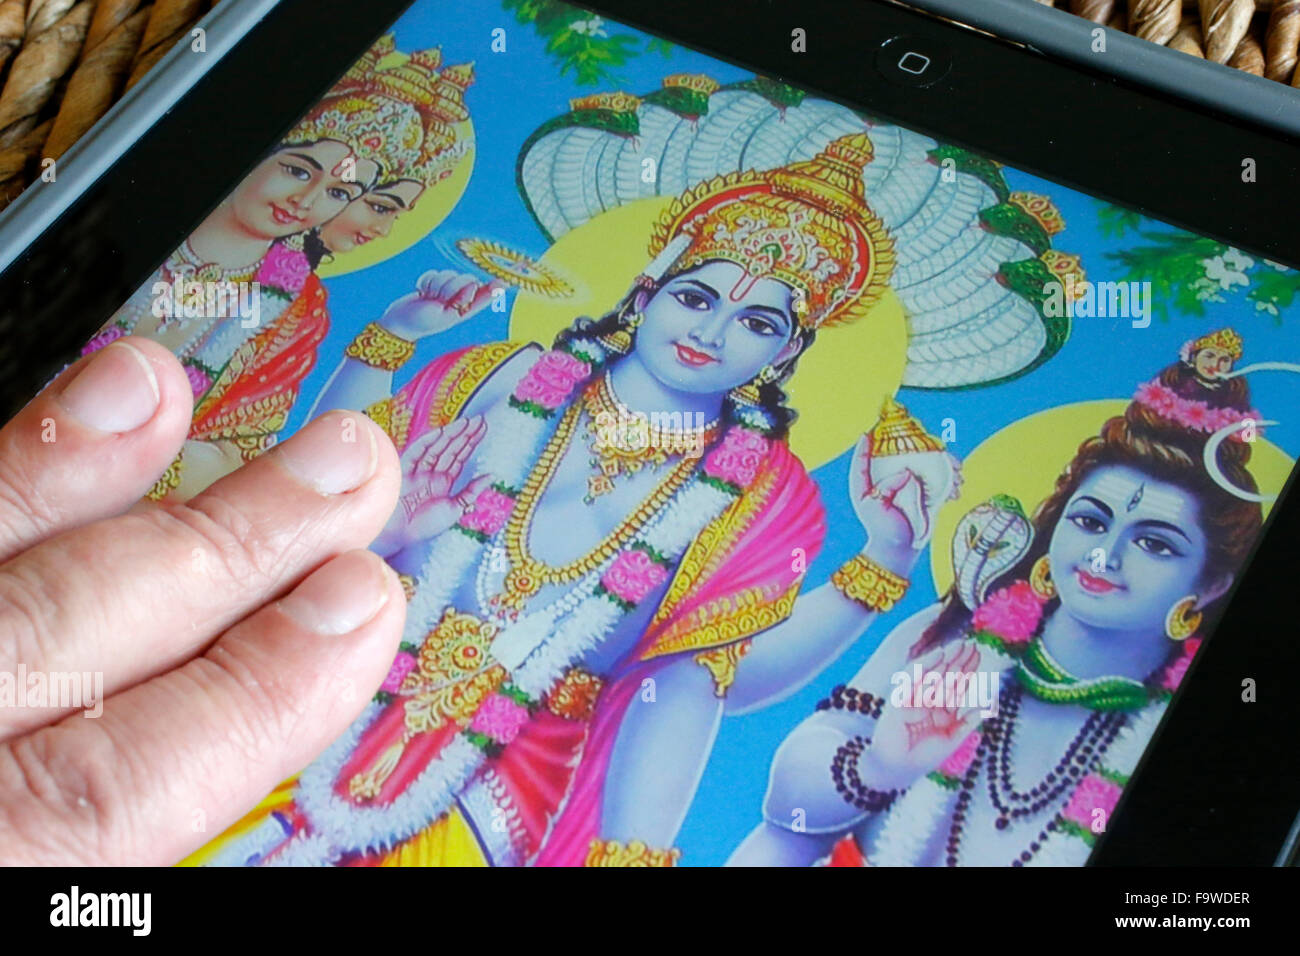 Hindu deities on an Ipad. Stock Photo